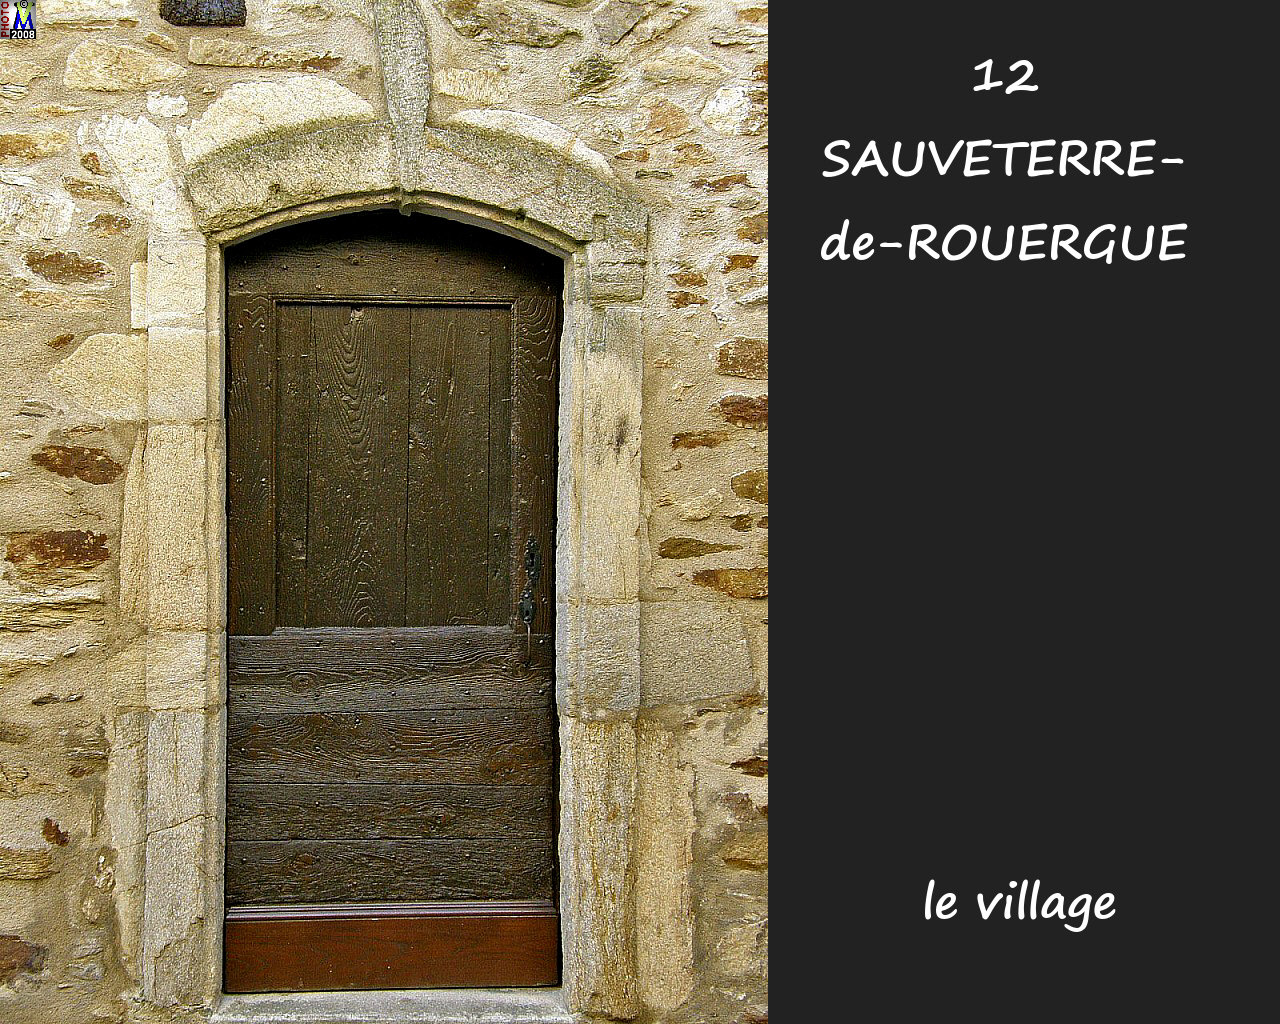 12SAUVETERRE-ROUERGUE_village_182.jpg